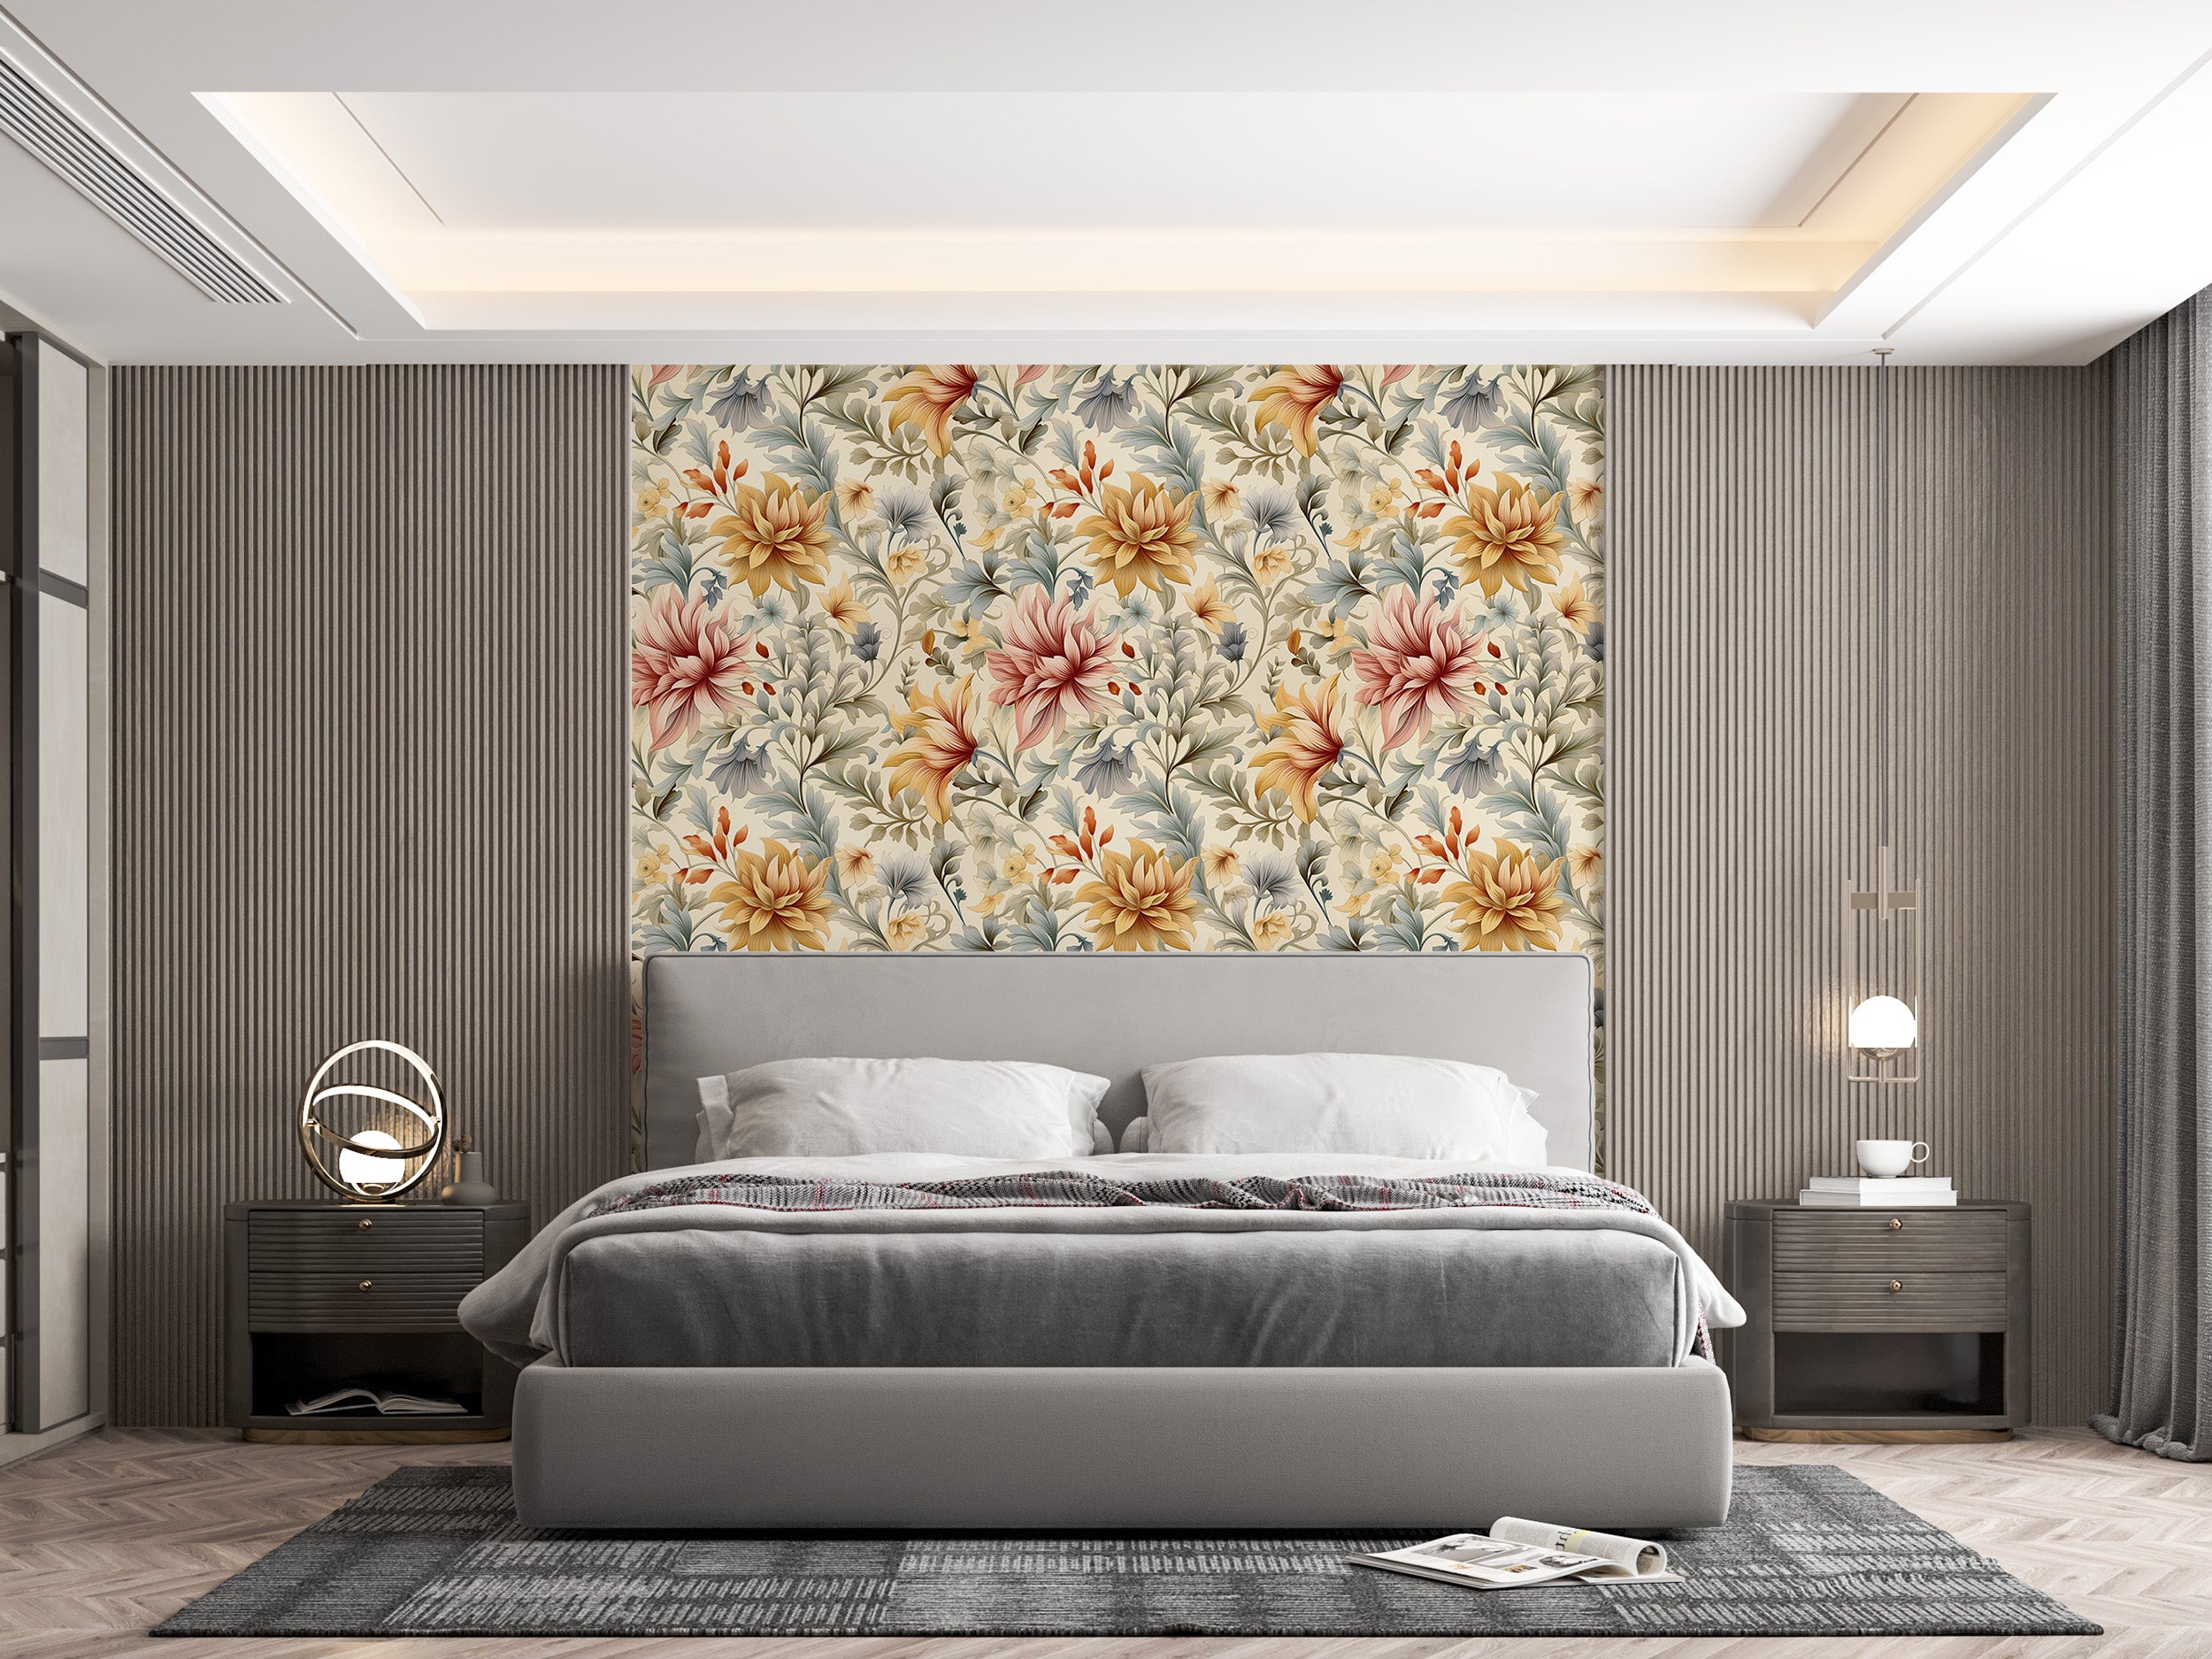 Dynamic Flower Wallpaper for Interior Decor